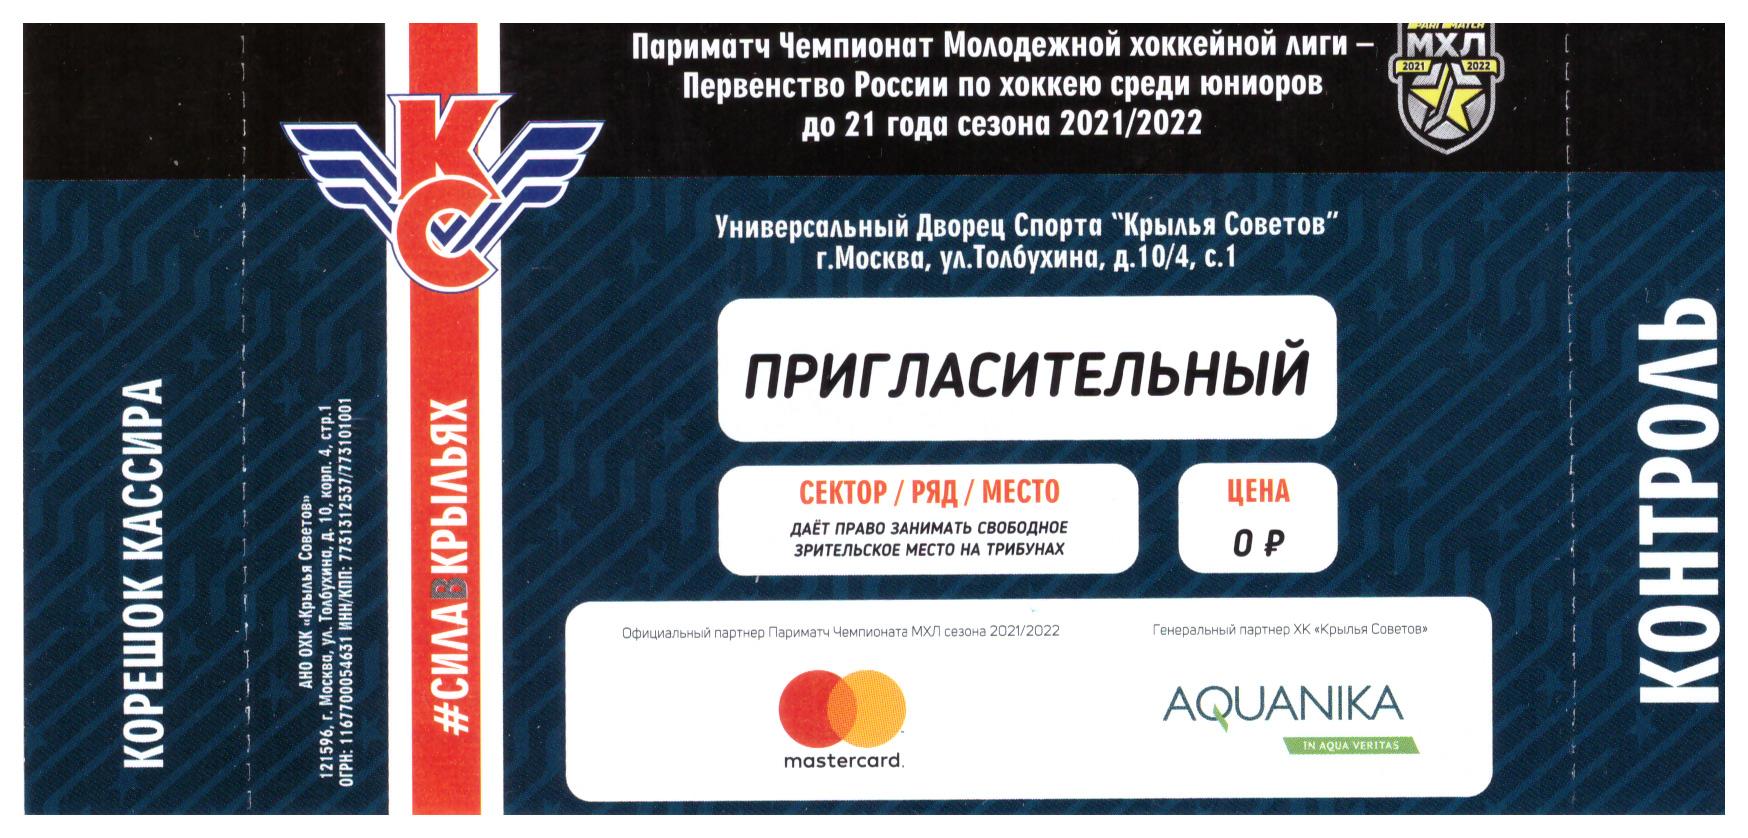 Билеты на хоккей. Билеты на хоккей в Москве. Картинка билет на хоккей. Клипарт билет на хоккей. Билеты на матч крылья